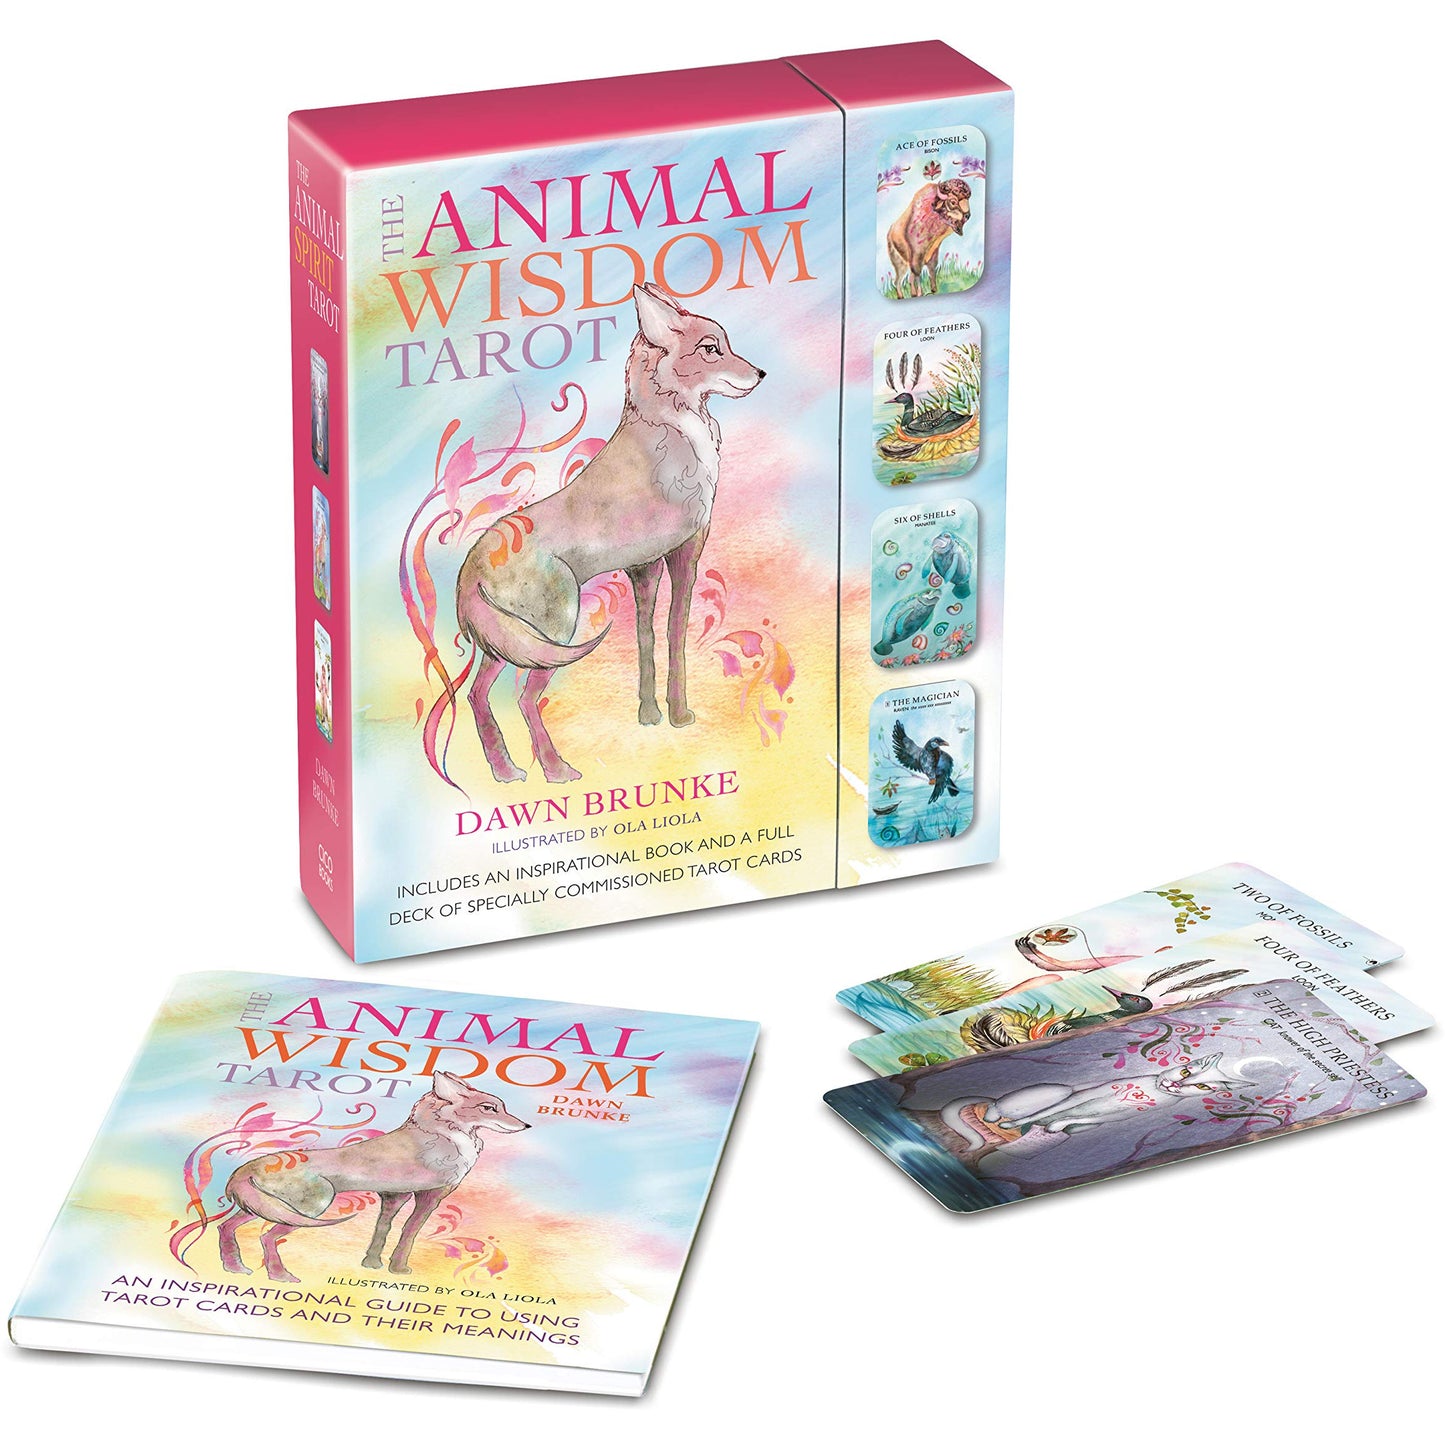 The Animal Wisdom Tarot Cards